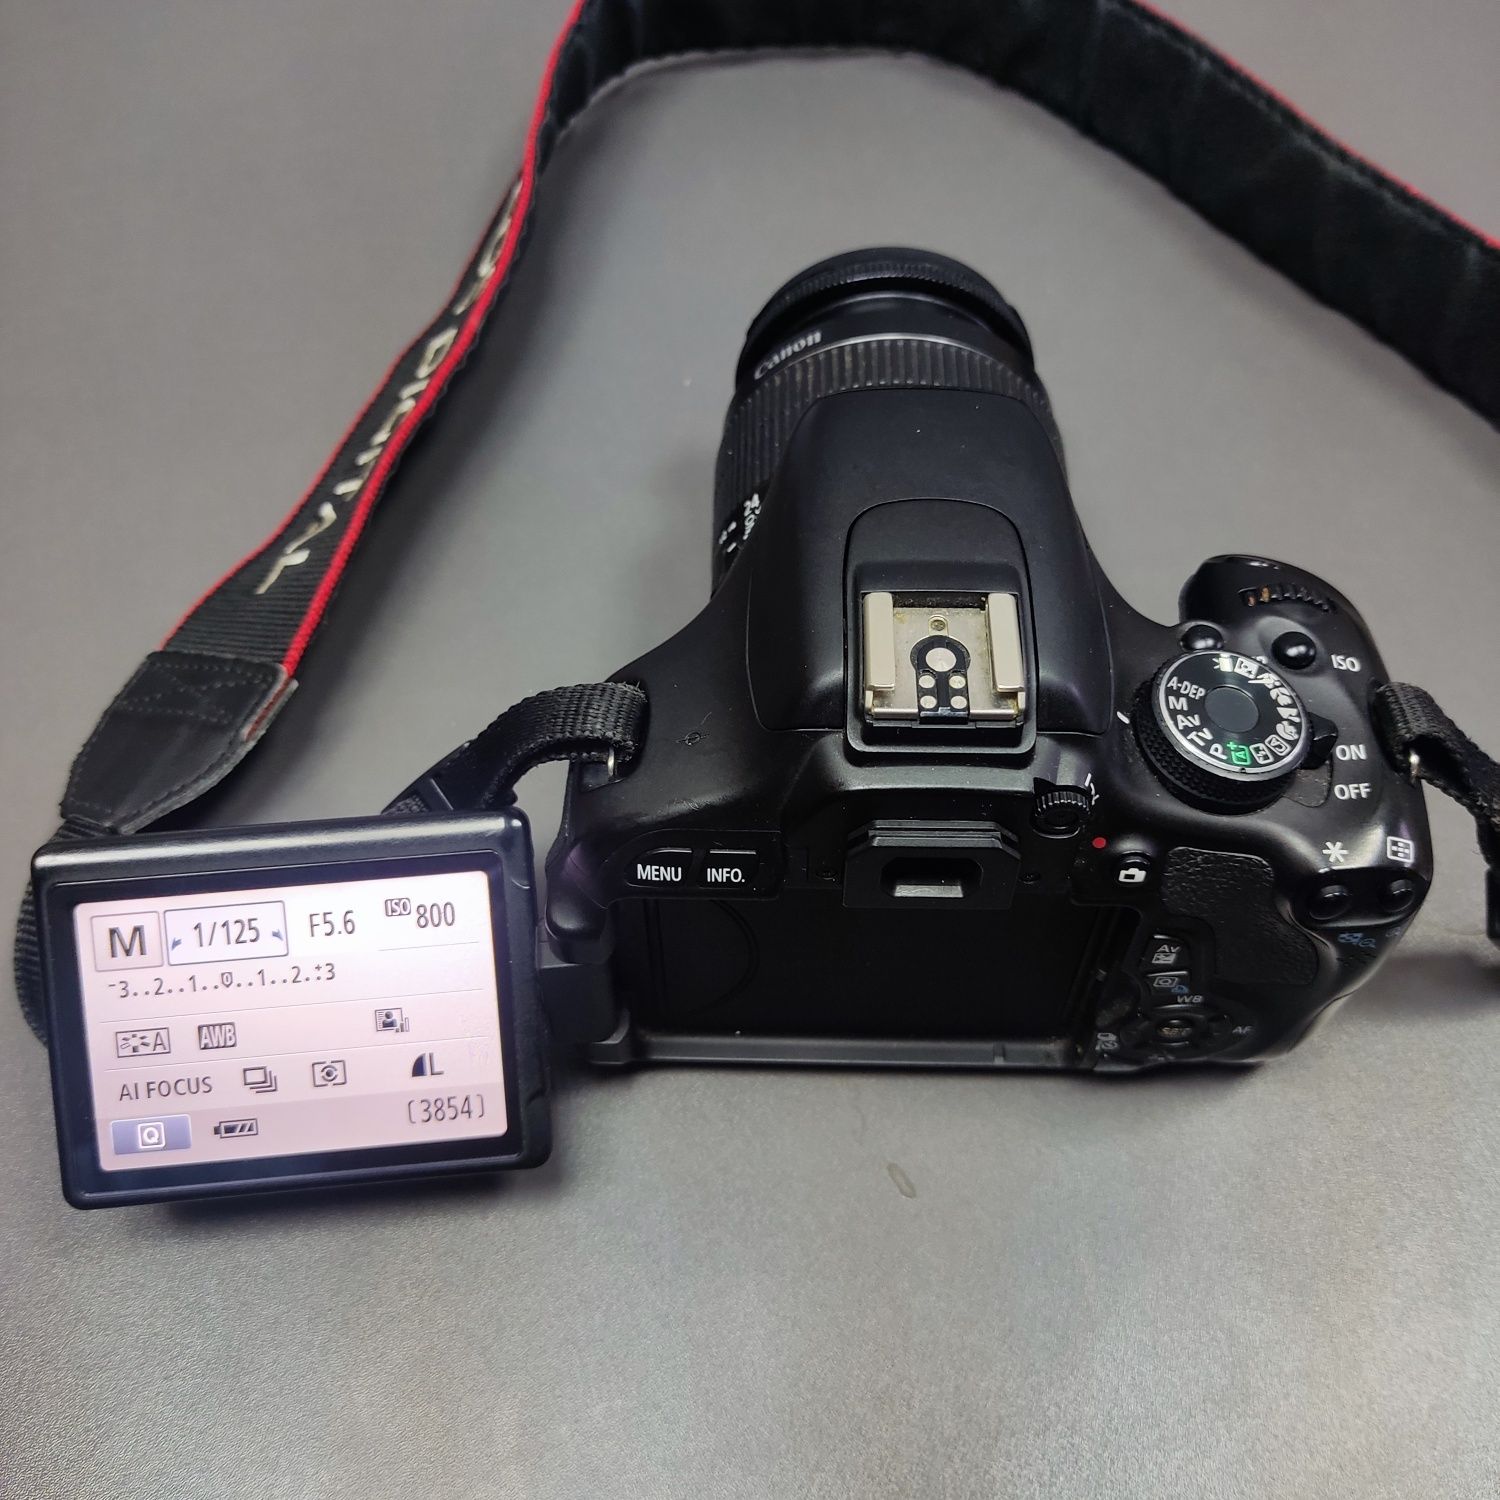 Canon EOS Rebel T3i с kit объективом Canon 18-55мм